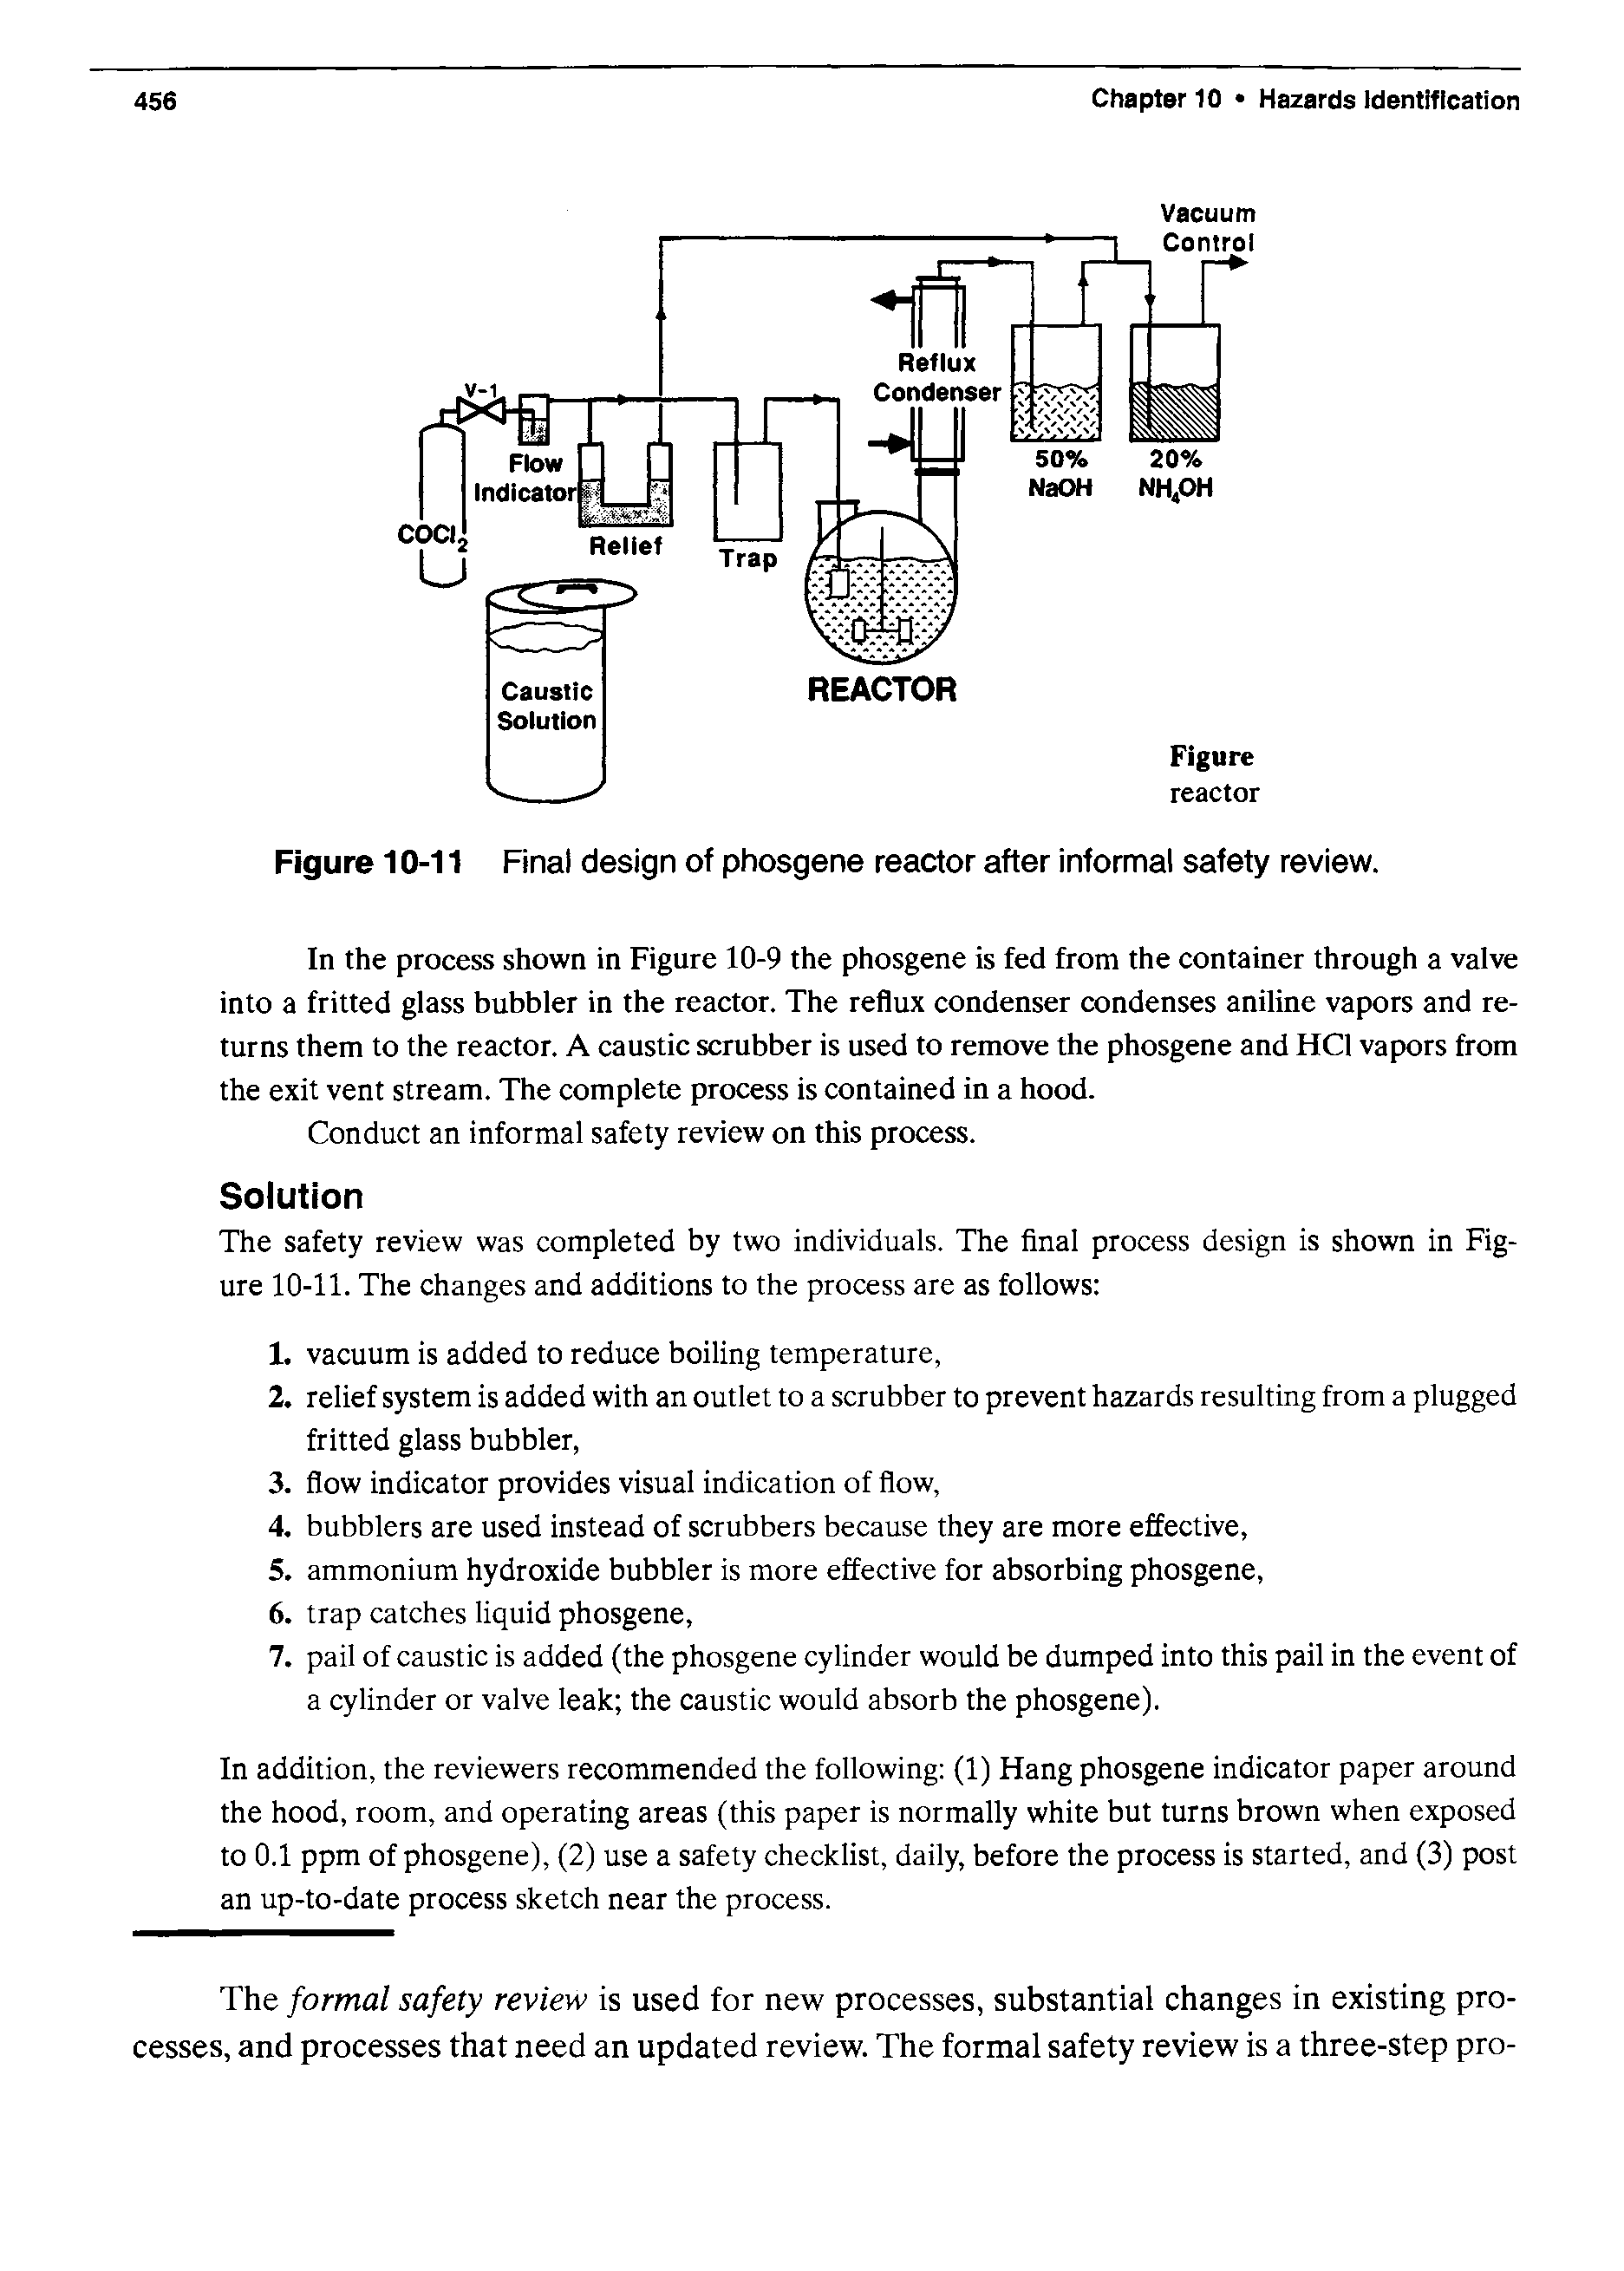 Figure 10-11 Final design of phosgene reactor after informal safety review.